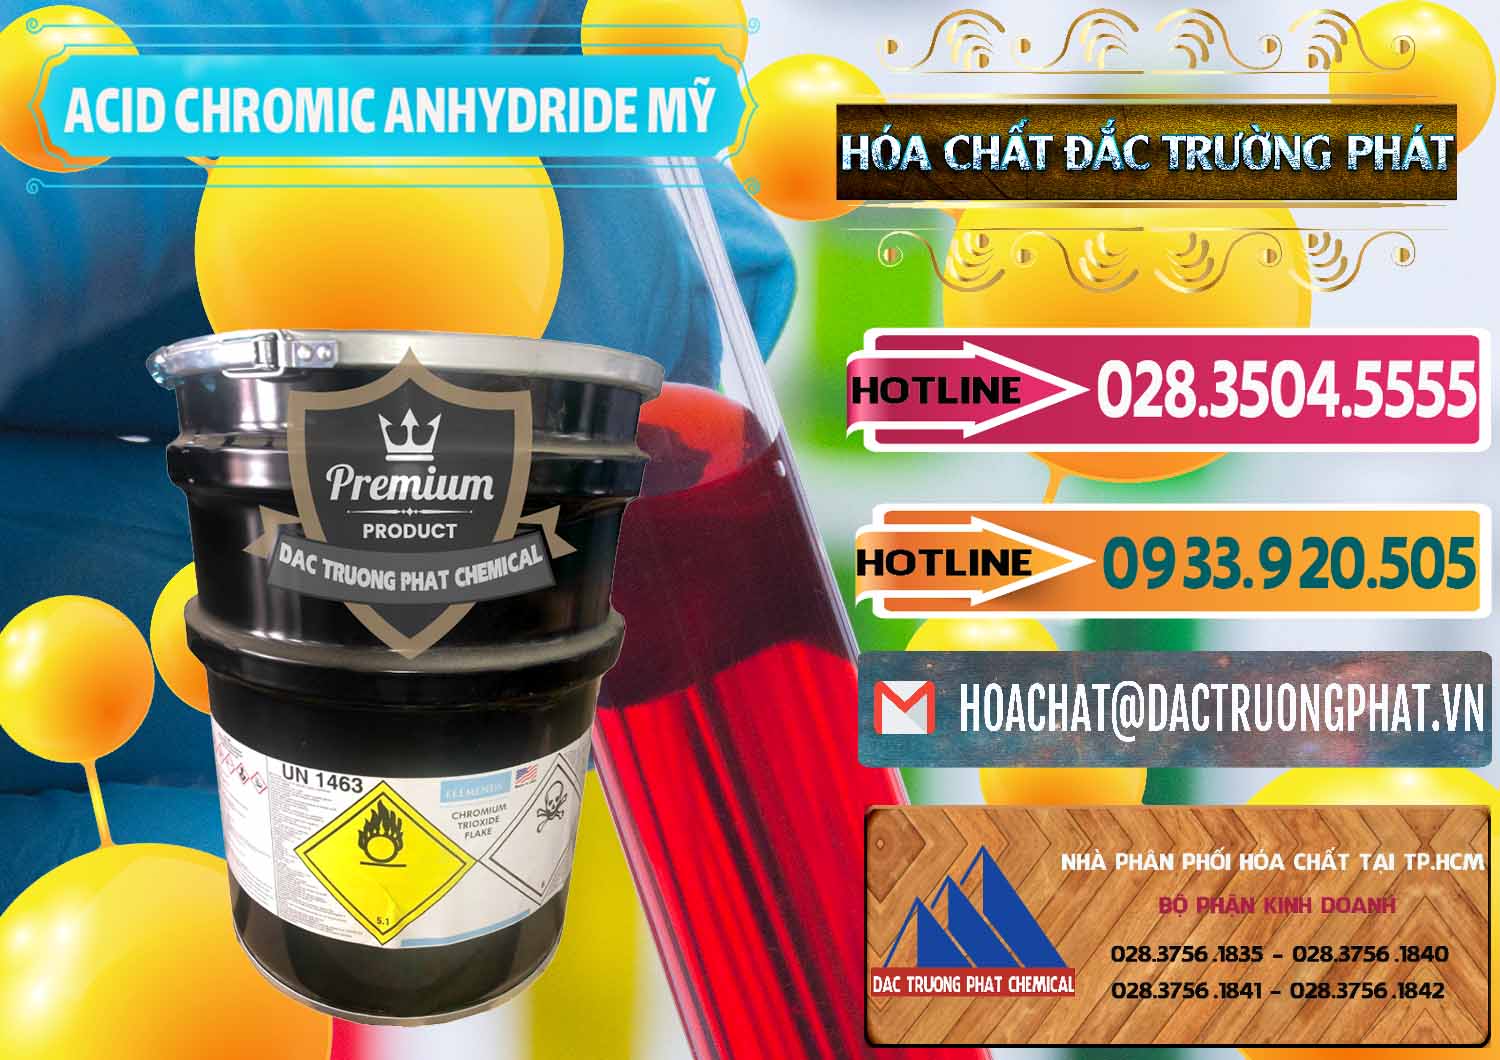 Cty chuyên kinh doanh ( bán ) Acid Chromic Anhydride - Cromic CRO3 USA Mỹ - 0364 - Cty chuyên cung cấp ( kinh doanh ) hóa chất tại TP.HCM - dactruongphat.vn